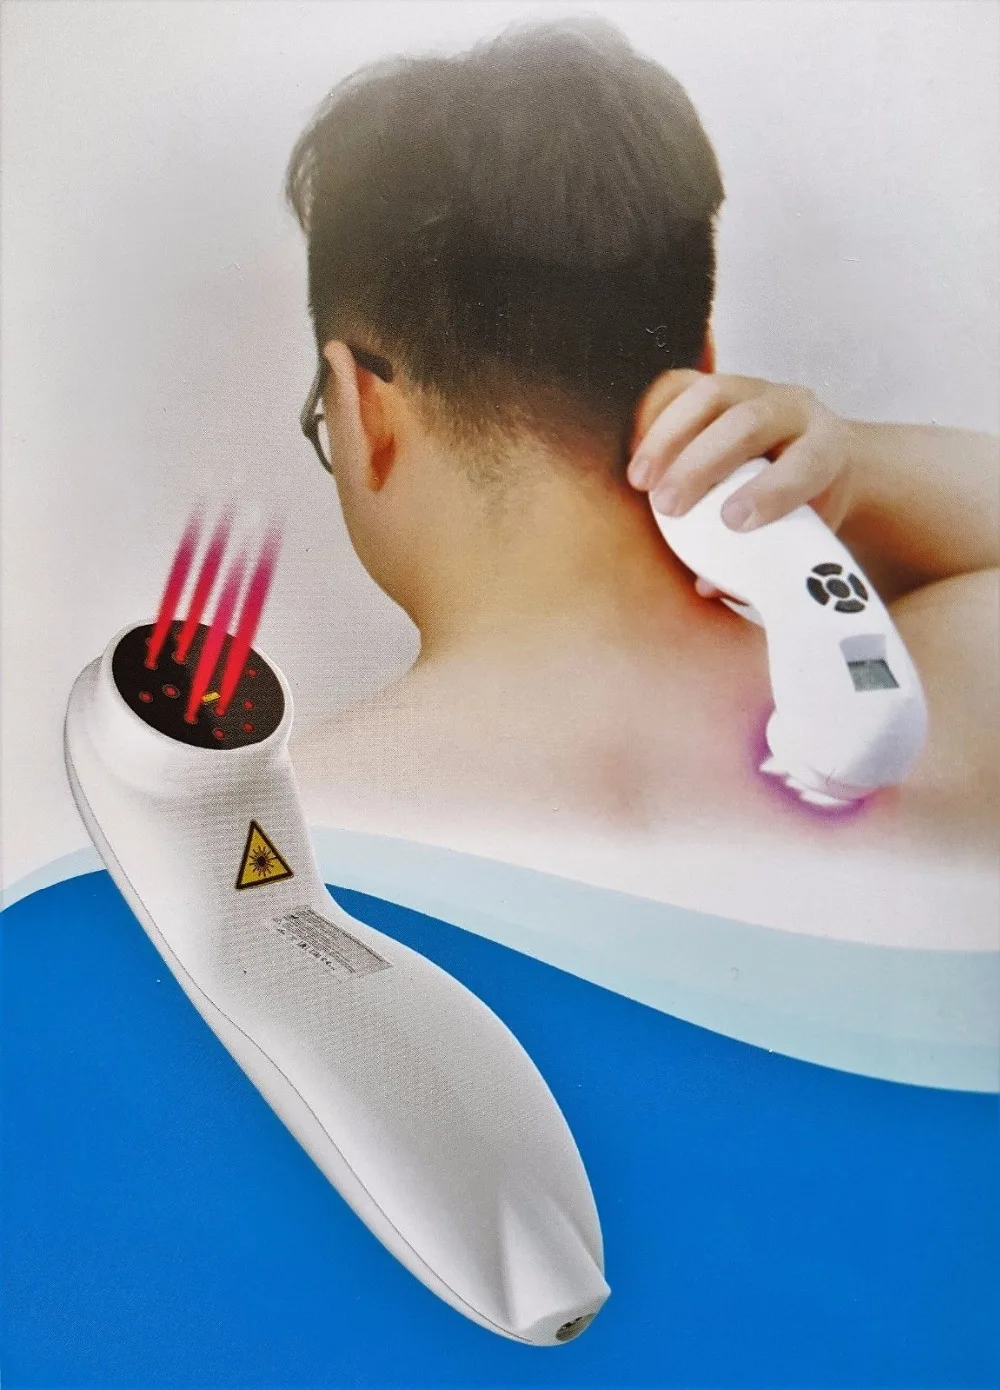 Удобное перезаряжаемое устройство для снятия боли в холоде, устройство для лазерной терапии, устройство для снятия боли в теле, устройство